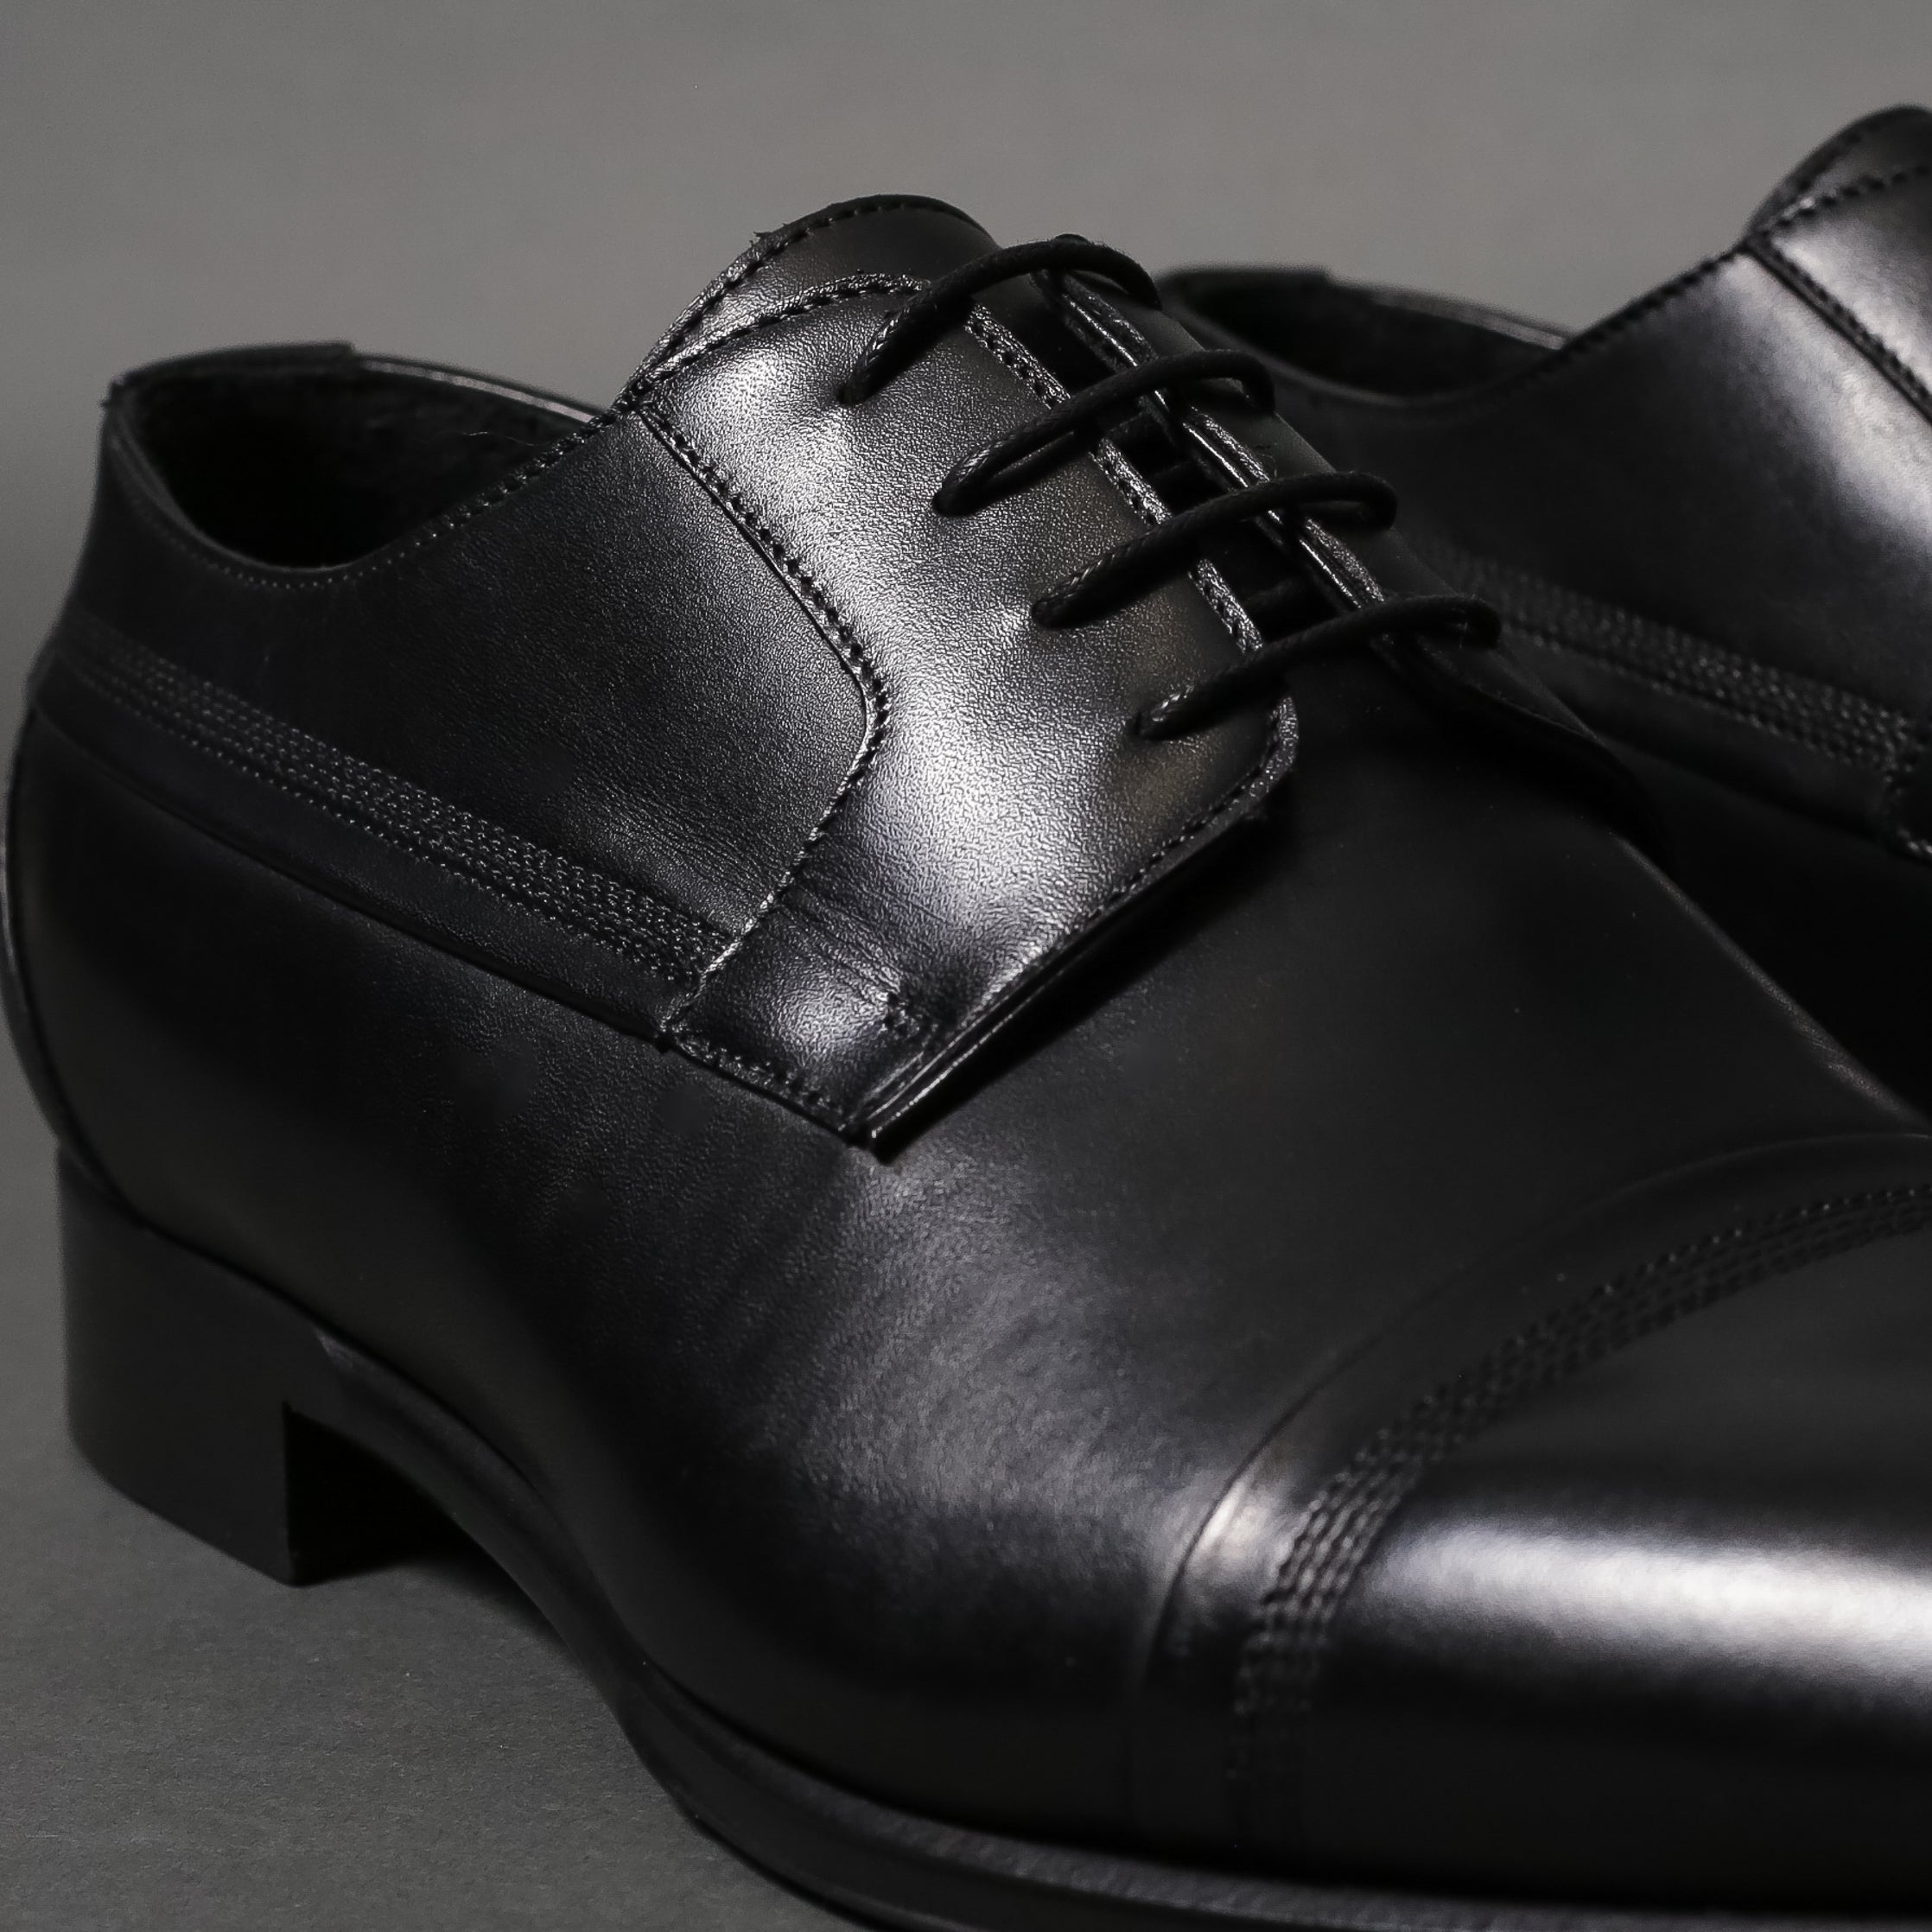 Michele black - 124 Shoes